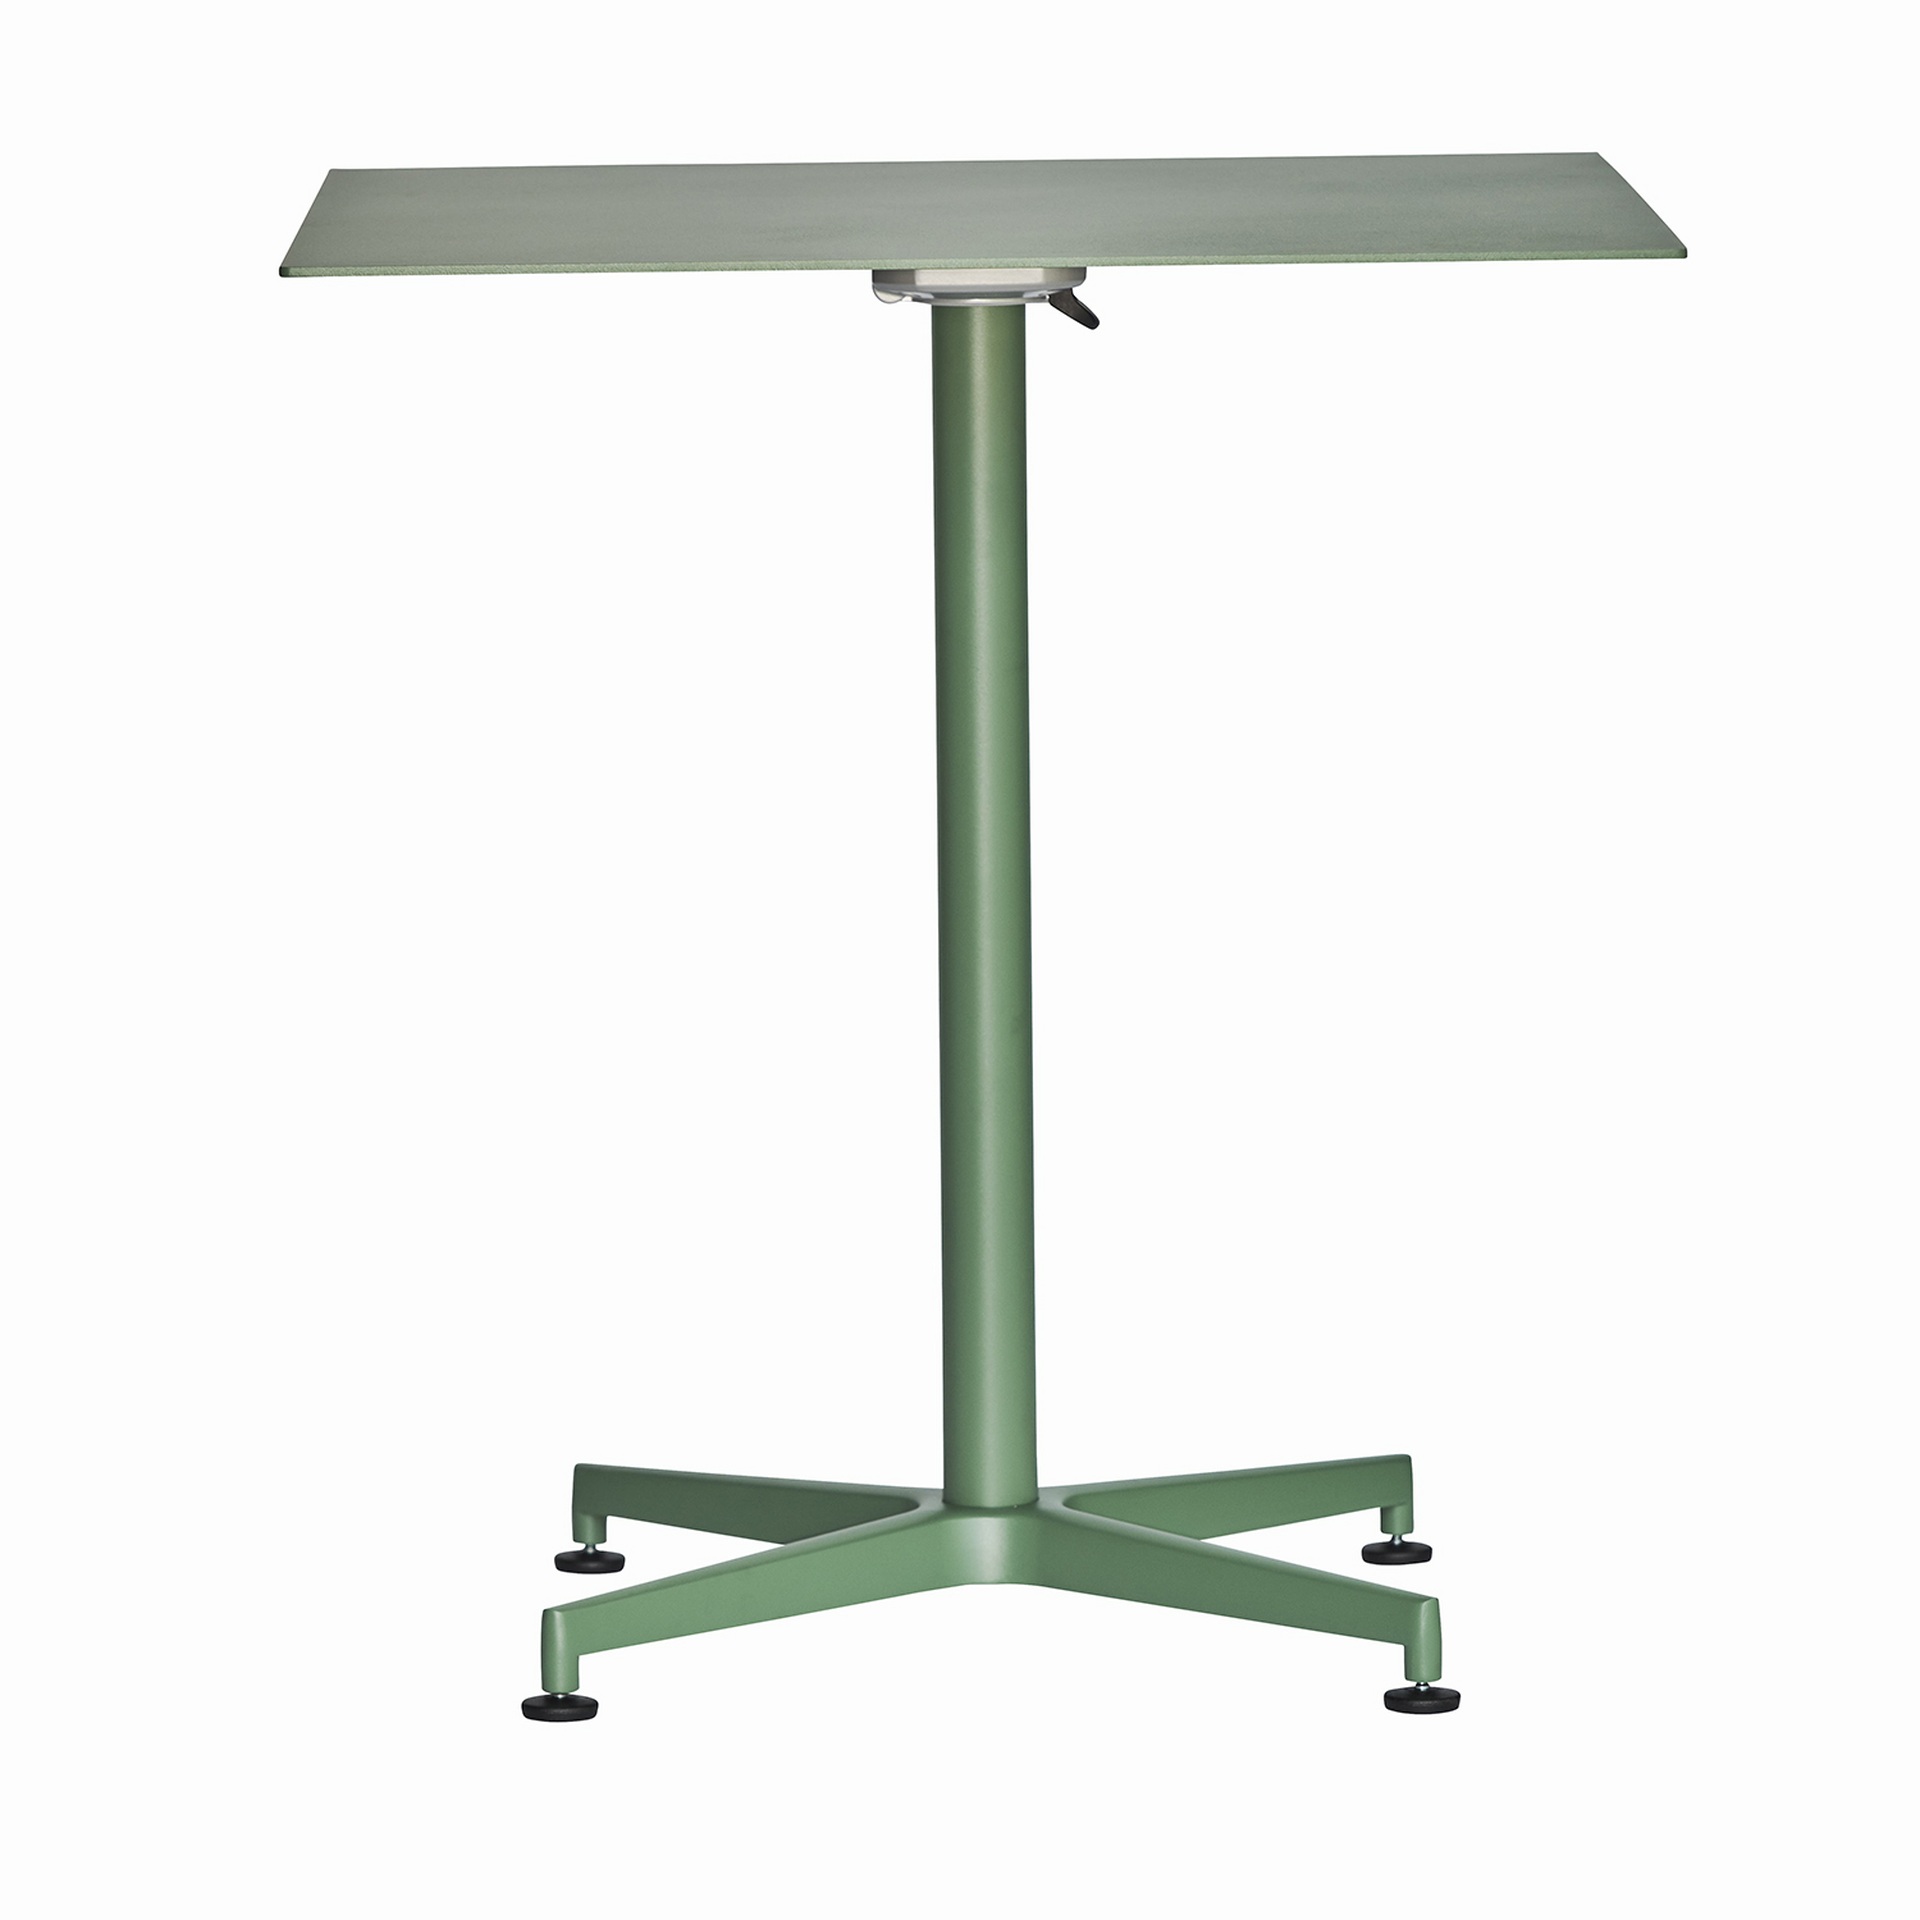 Der Klapptisch Vega in eckiger Form besitzt ein modernes Design. Hergestellt wurde der Tisch aus Aluminium und ist in verschieden Farben erhältlich. Der Tisch ist von der Marke Jan Kurtz.